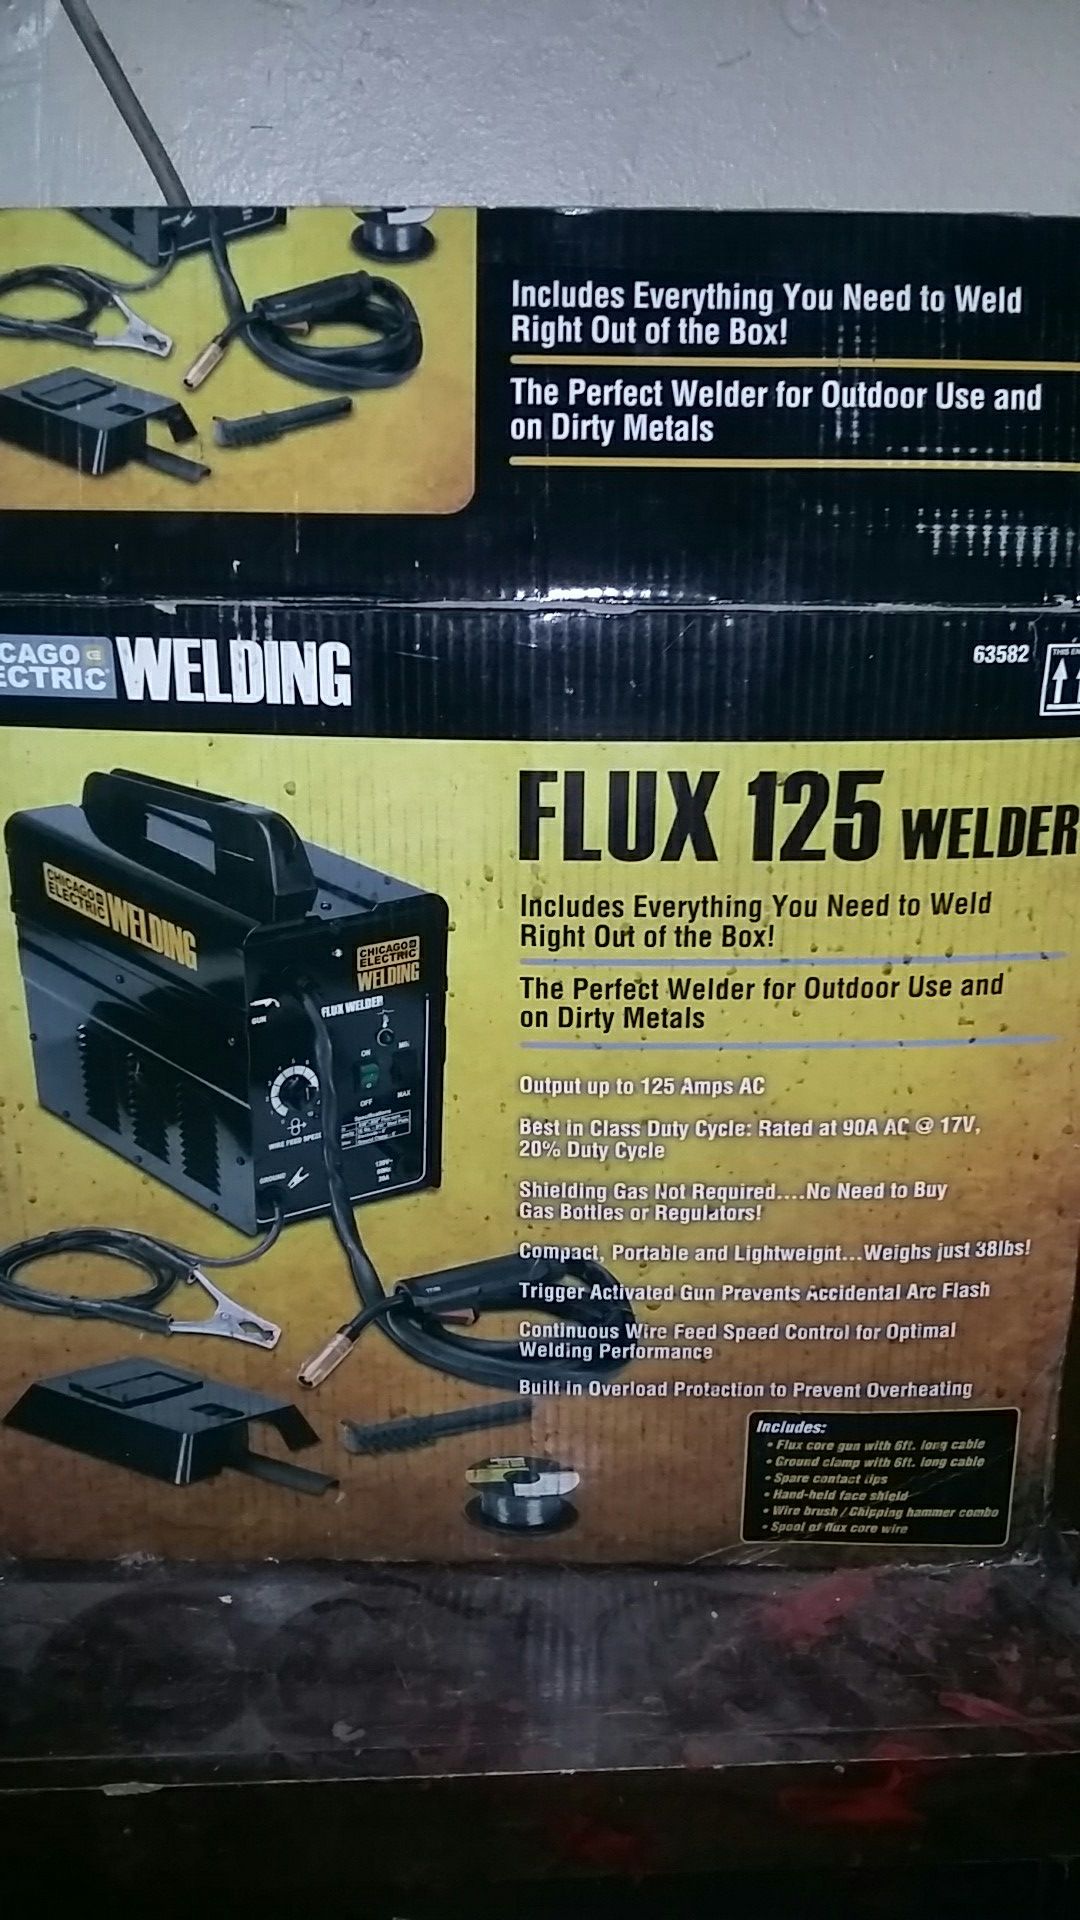 Chicago Electric : Flex 125 Welder